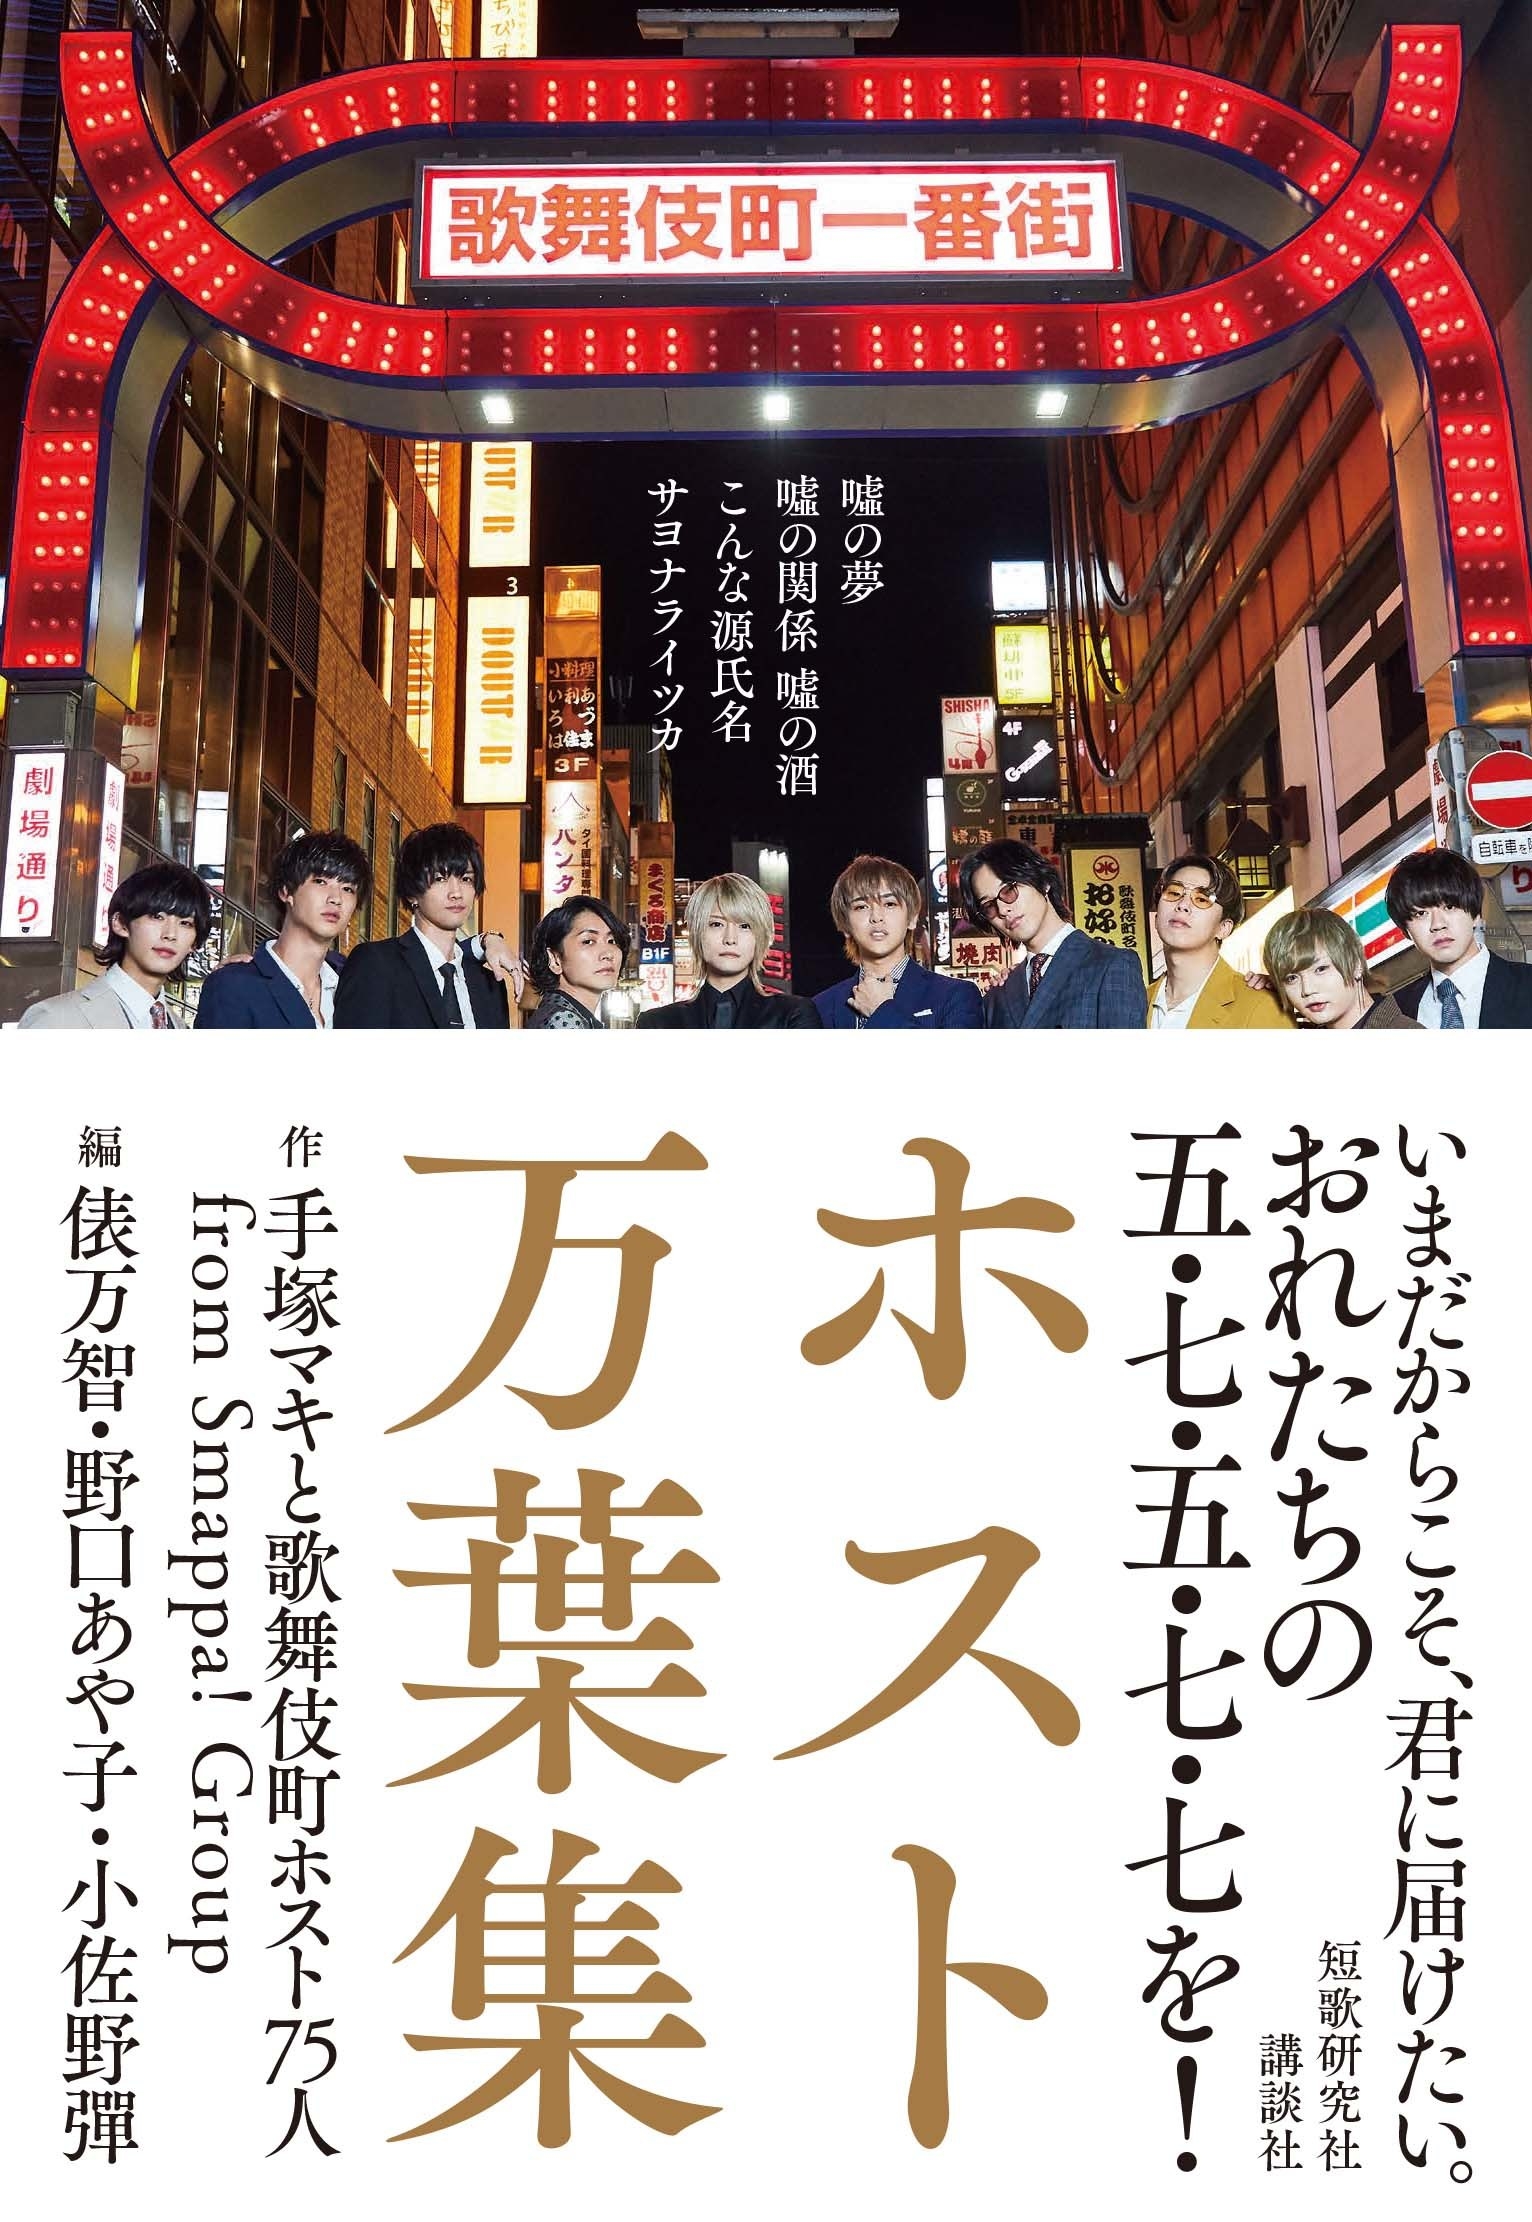 嘘の夢 嘘の関係 嘘の酒 歌舞伎町のホストが詠む 31文字 の愛の歌がエモい話